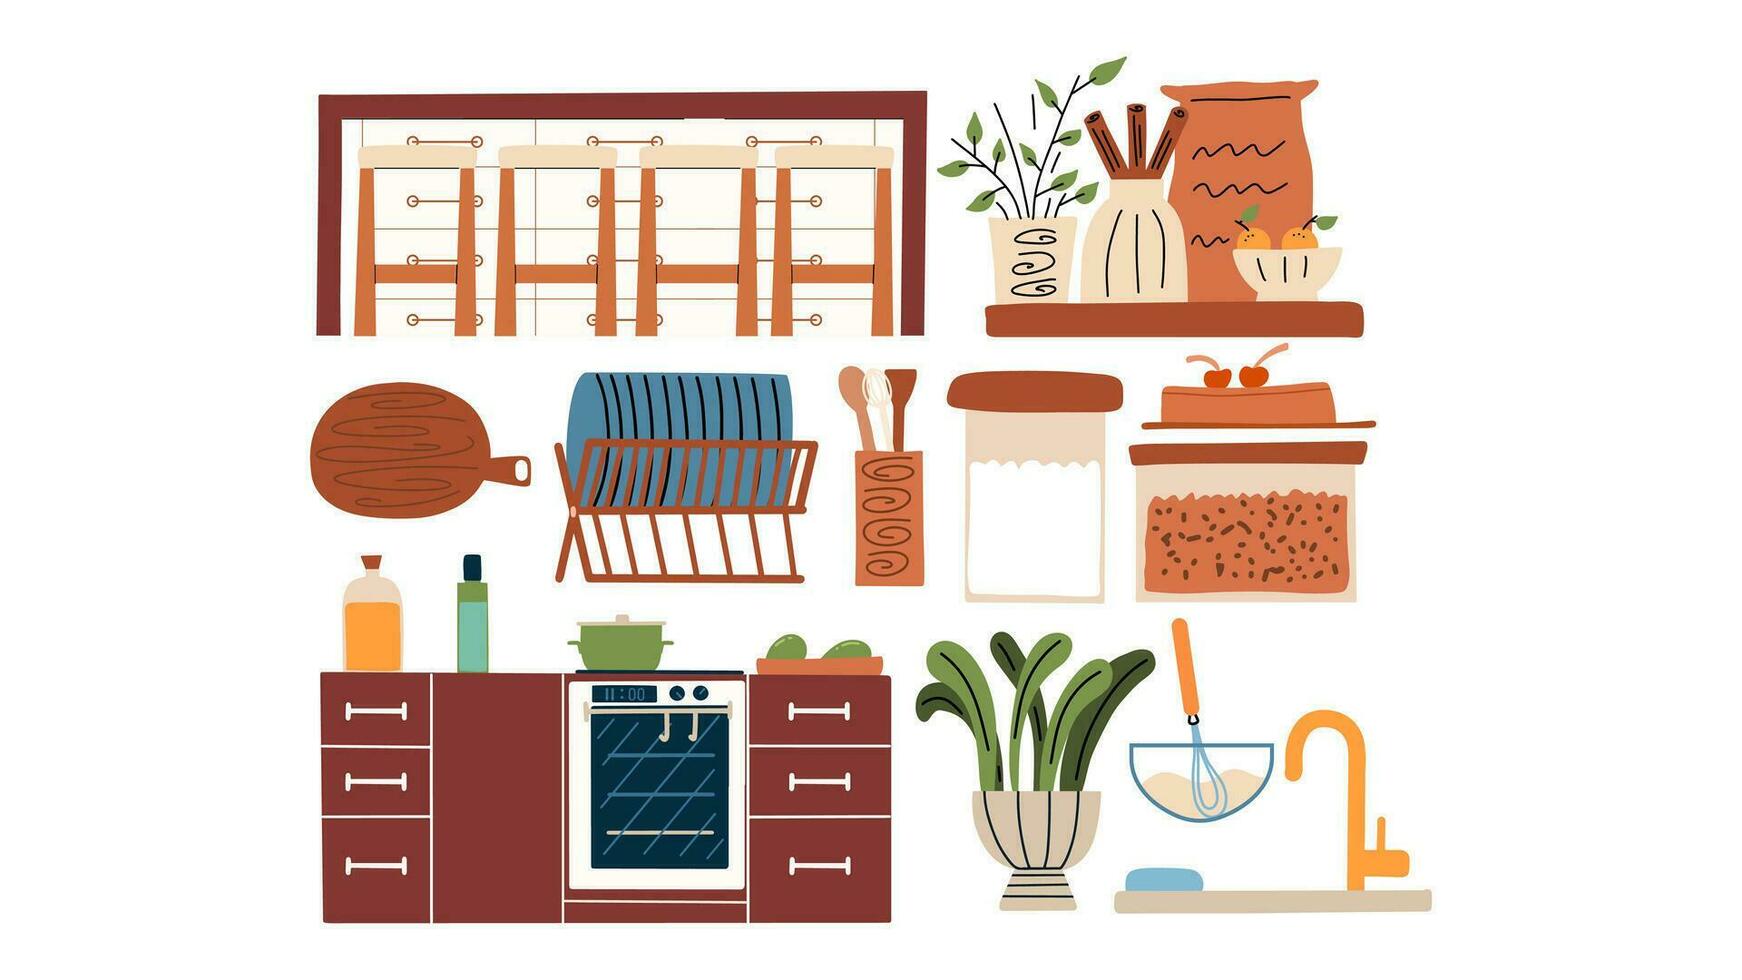 keuken set. keuken gebruiksvoorwerpen, borden, wasbak, potten, oven, taart, en meer. hand- trek illustratie vector